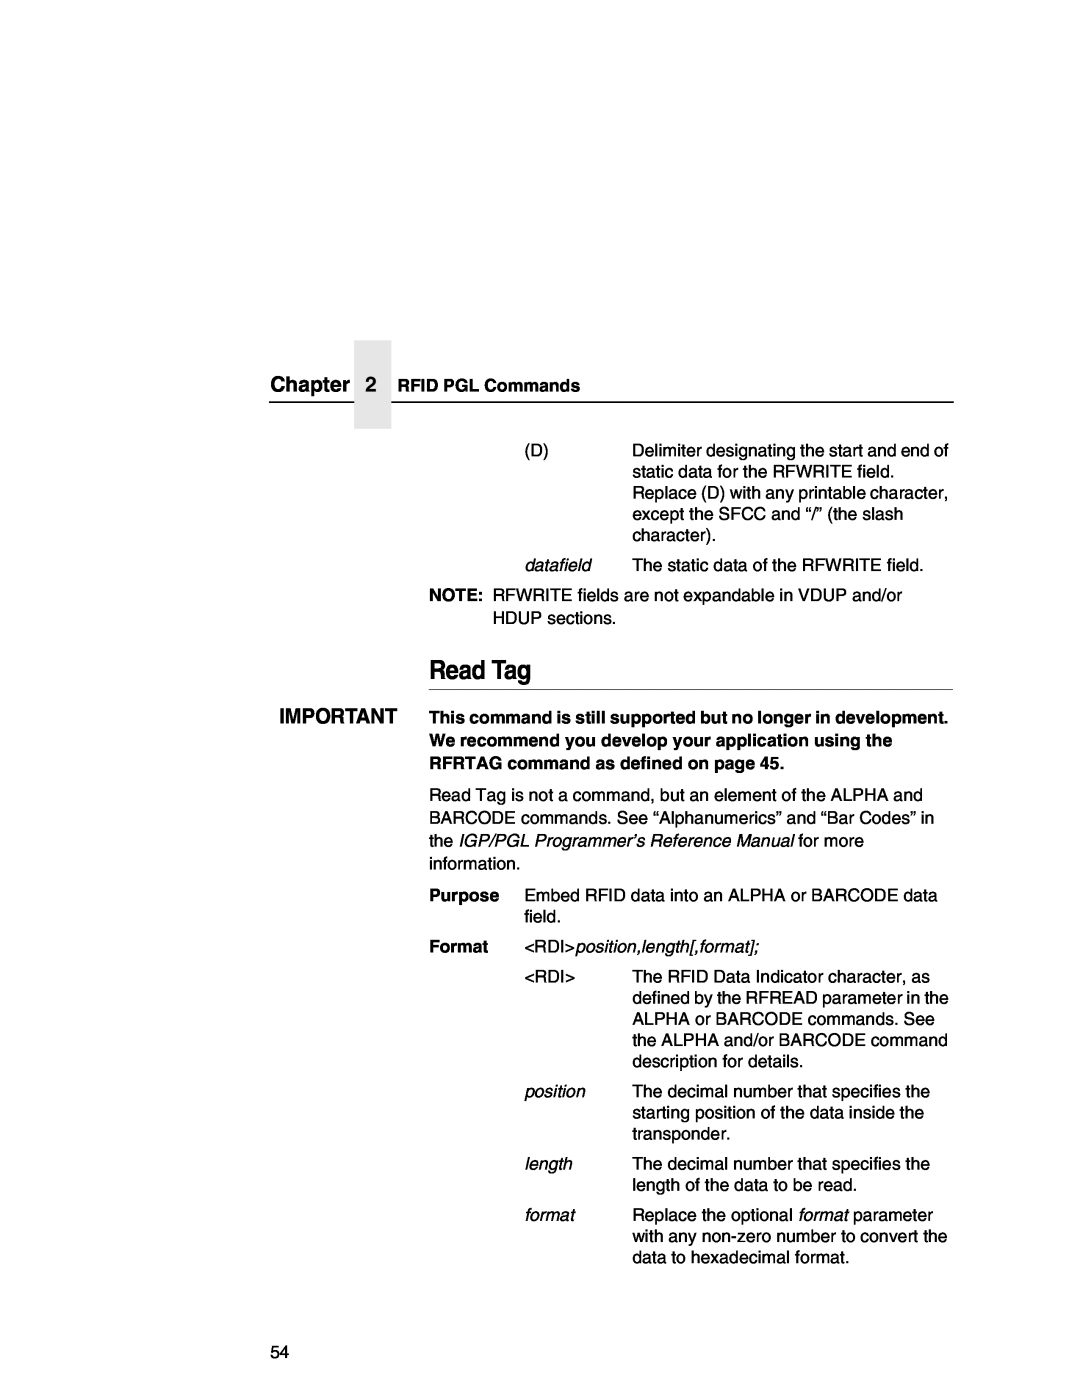 Printronix SL5000r MP manual Read Tag, RFID PGL Commands 